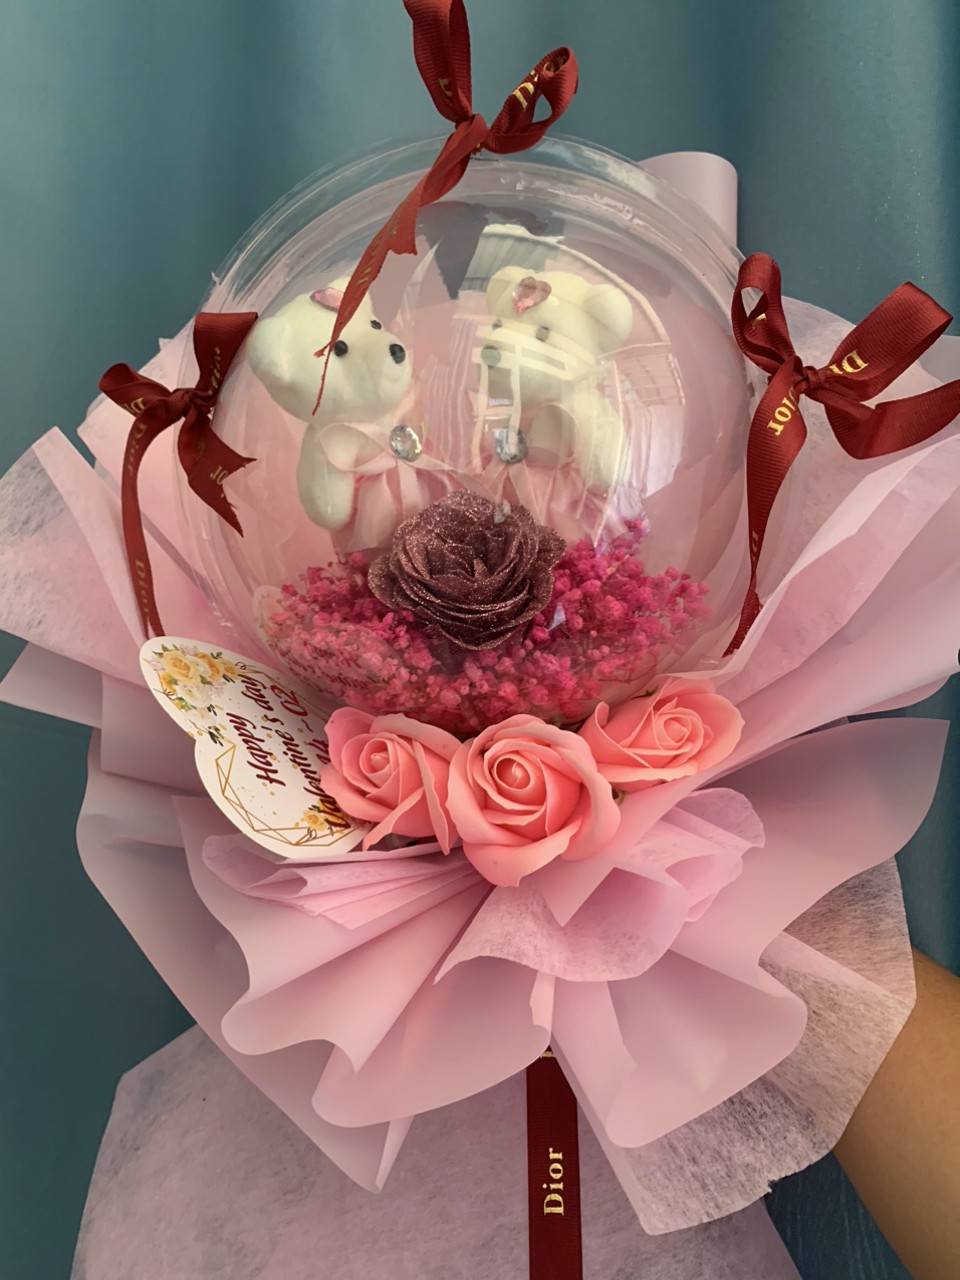 Hoa là mặt hàng được nhiều khách ưa chuộng nhất trong dịp Lễ tình nhân. Trong ảnh: Một bó hoa do chị Huỳnh Thị Yến, chủ shop hoa tại tổ 7, ấp Tây, TP. Bà Rịa làm giao khách.